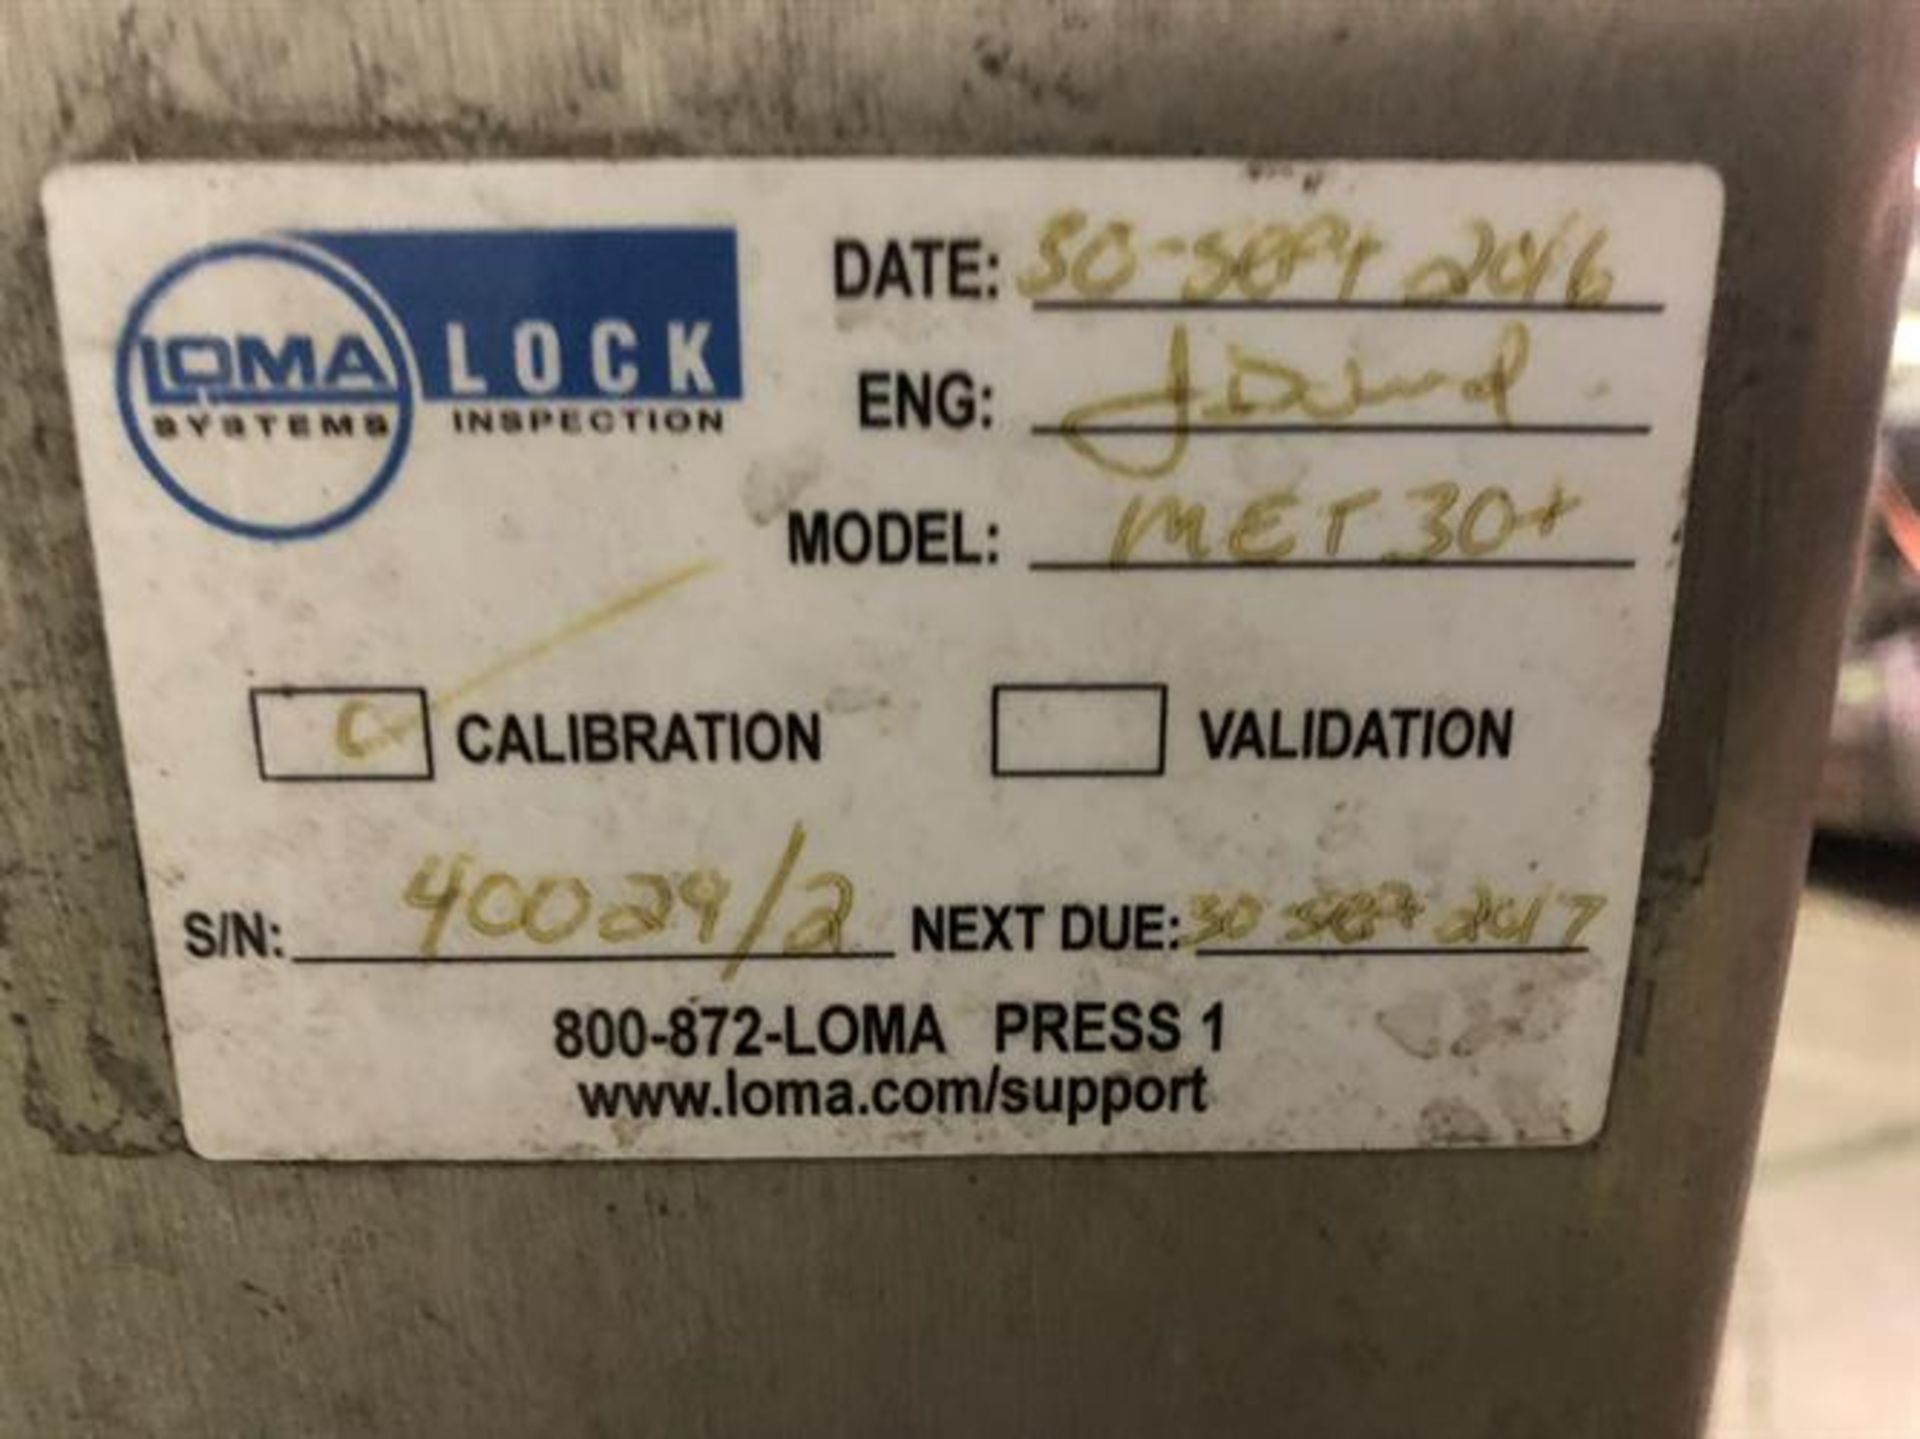 Lock Met 30+ metal detector - Image 6 of 11